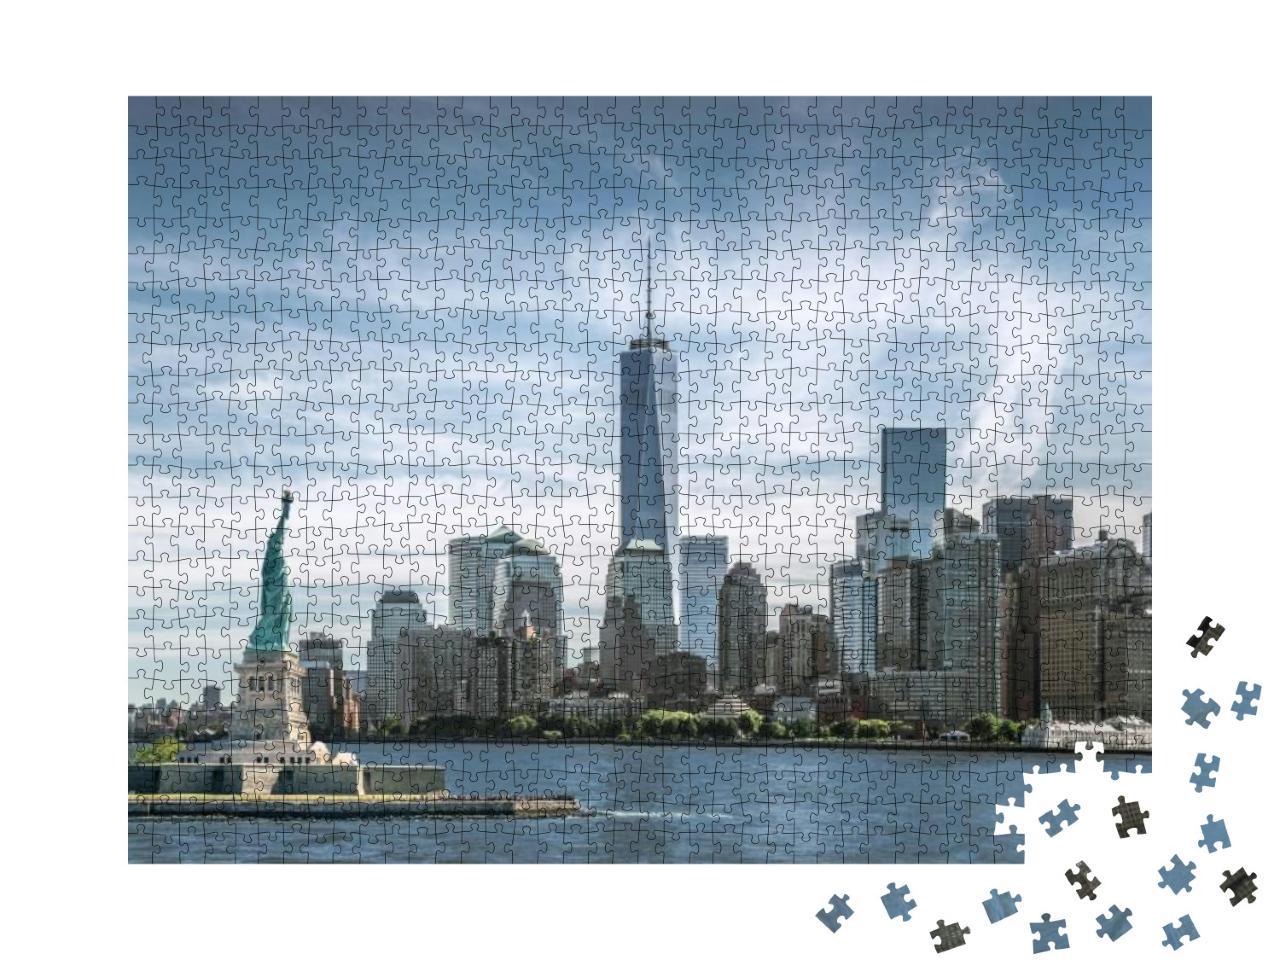 Puzzle 1000 Teile „Freiheitsstatue, Skyline von Manhatten, One World Trade Center, New York City“